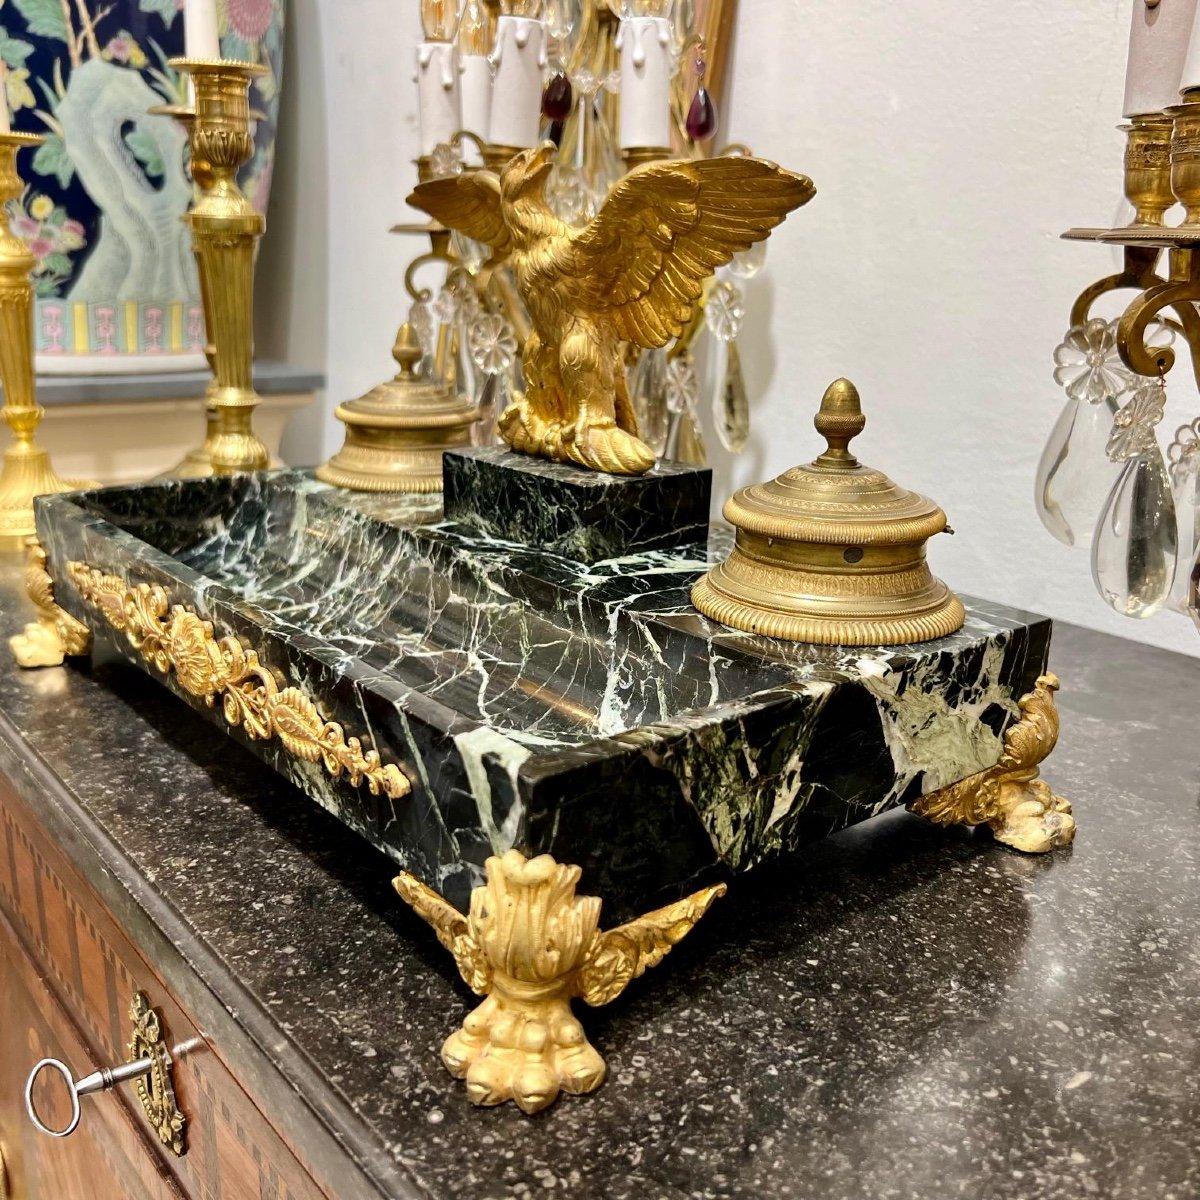 Wir möchten Ihnen dieses prächtige Tintenfass im Empire-Stil aus dem 19. Jahrhundert aus der Zeit Napoleons III. vorstellen, das mit einem erhabenen kaiserlichen Adlermotiv zwischen den beiden Tintenfässern in vergoldeten Bronzehaltern geschmückt